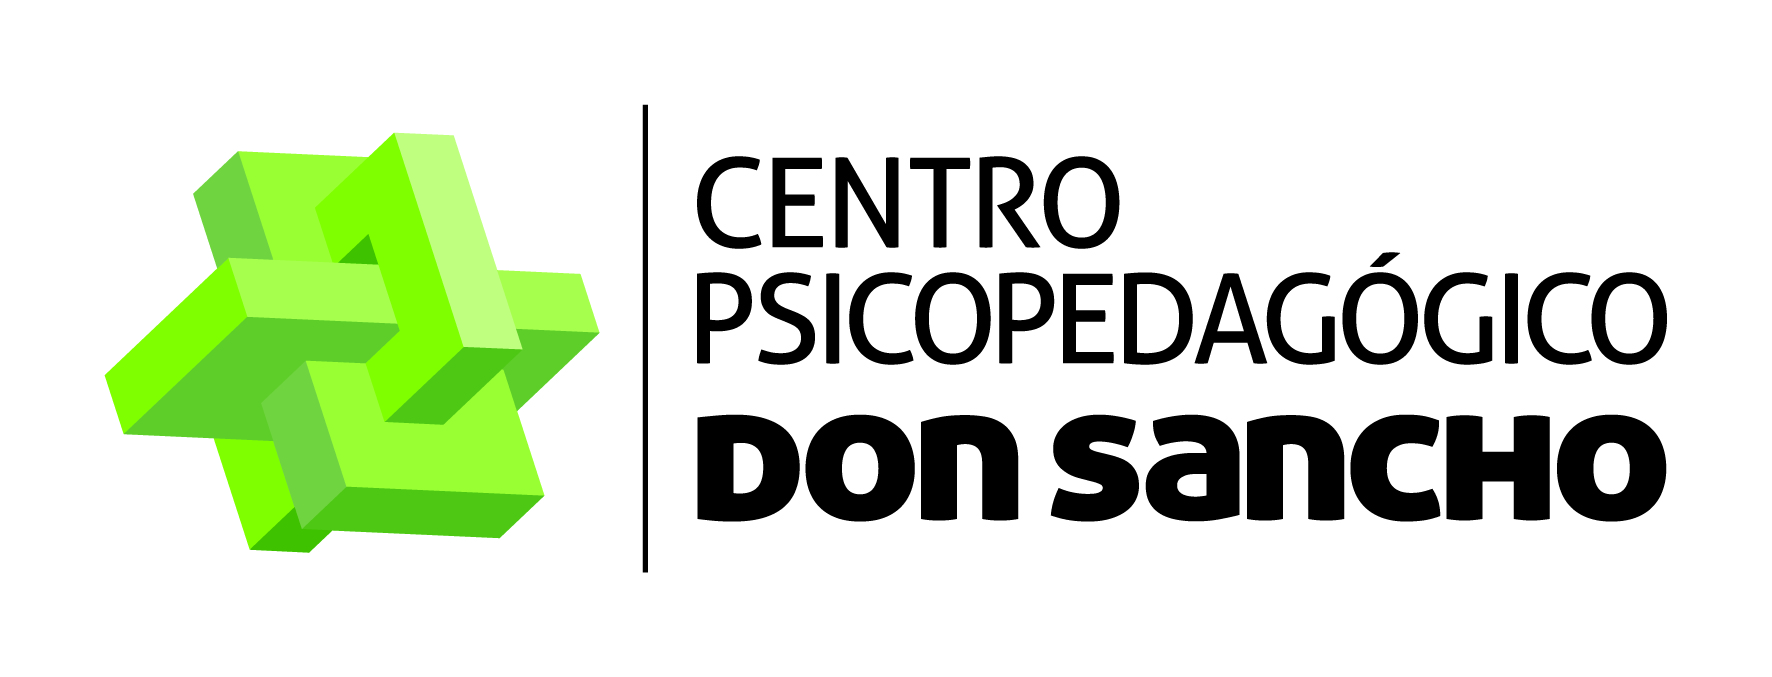 Logotipo de la clínica CENTRO PSICOPEDAGOGICO DON SANCHO, LAGUNA DE DUERO